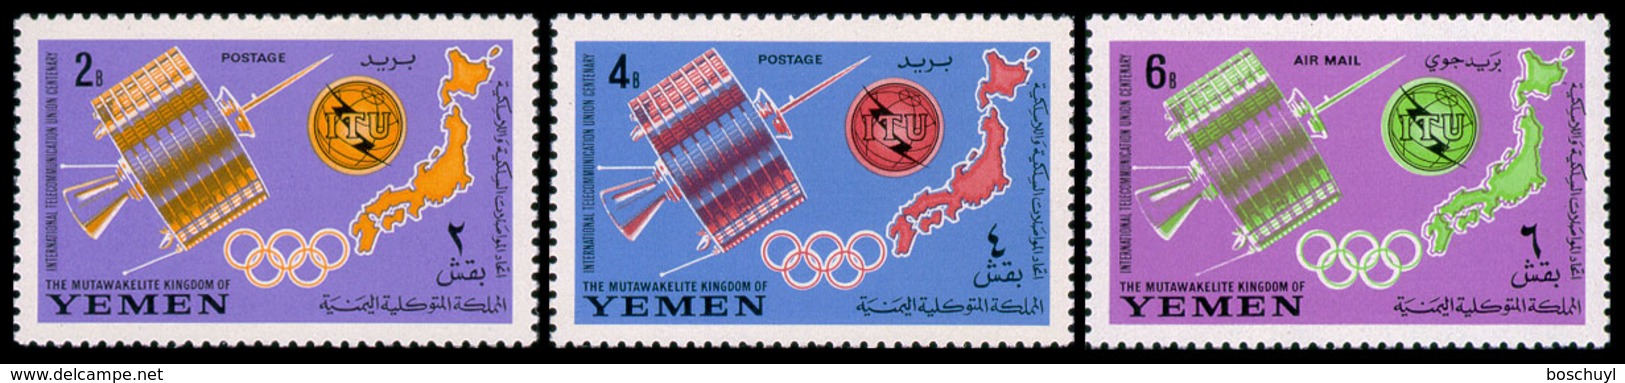 Yemen Kingdom, 1965, ITU Centenary, International Telecommunication Union, United Nations, Space, MNH, Michel 145-147A - Yemen